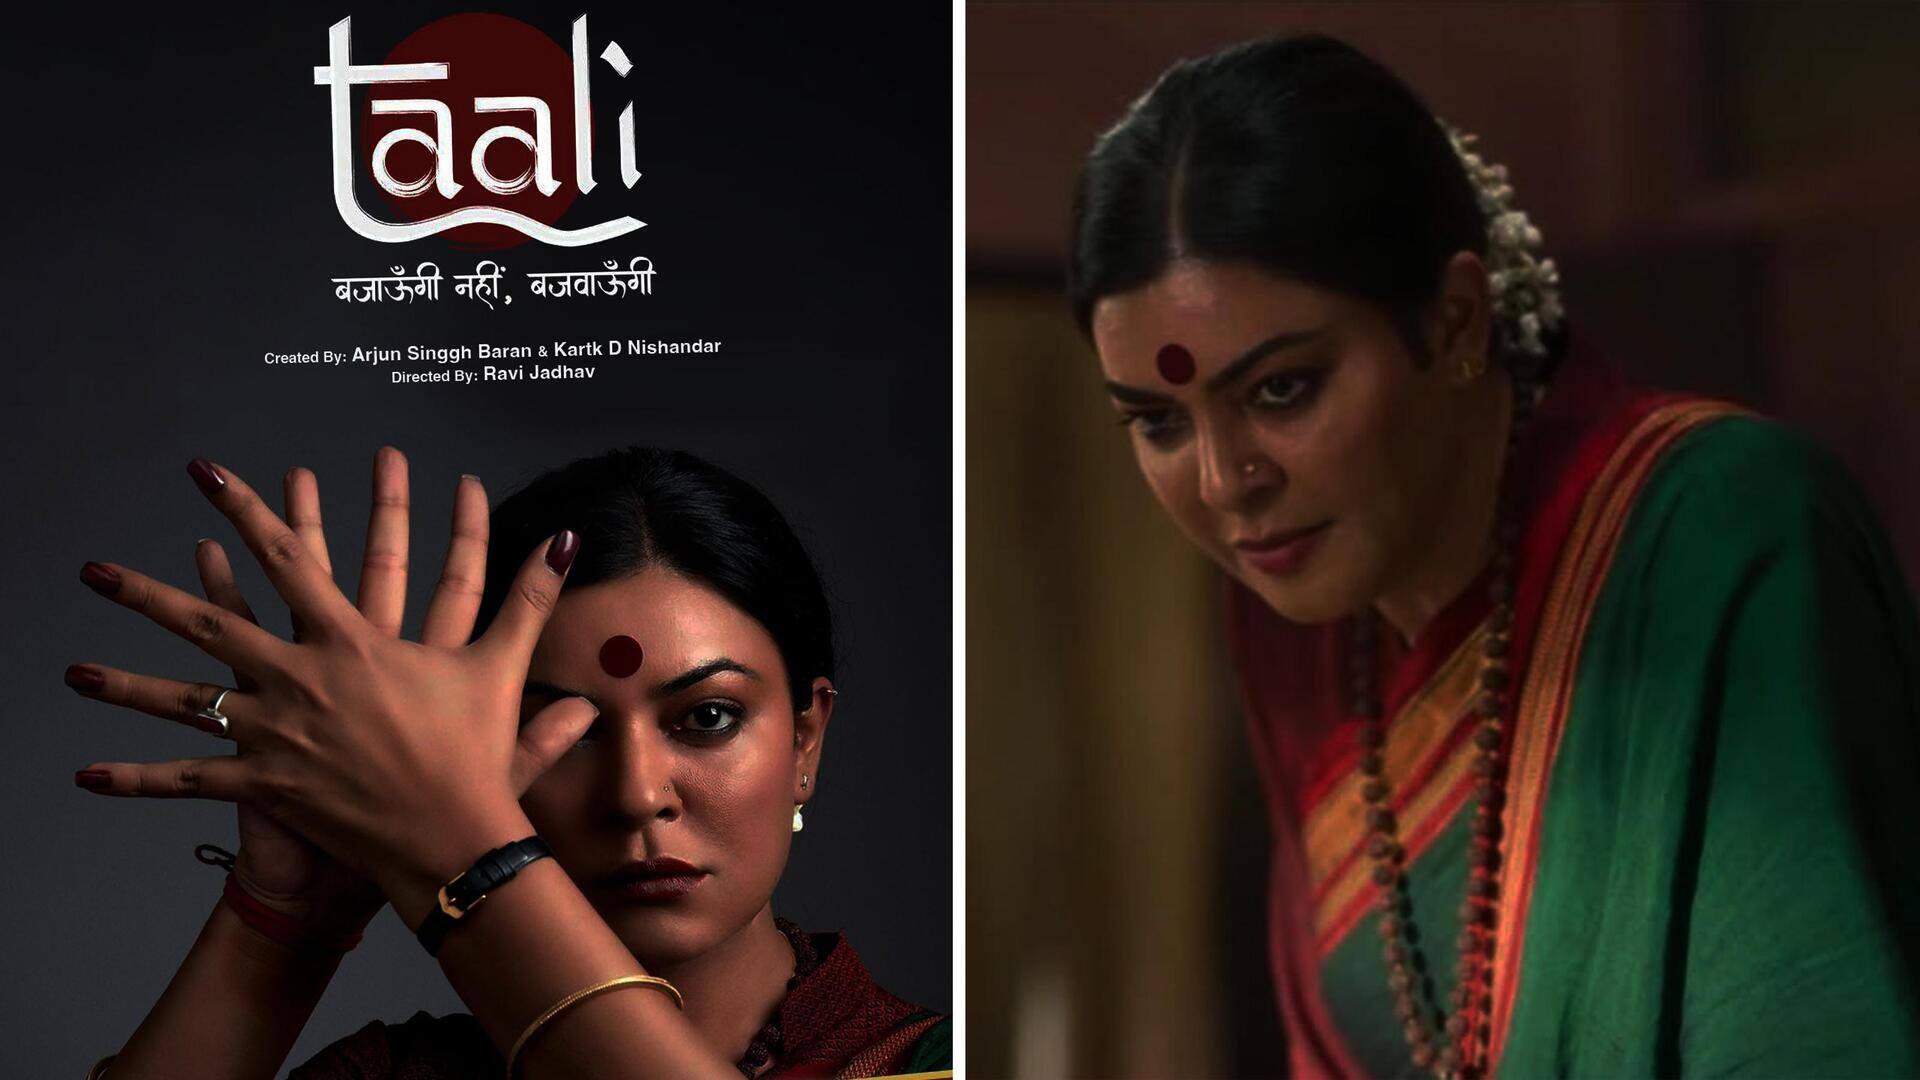 सुष्मिता सेन की वेब सीरीज 'ताली' का ट्रेलर जारी, अपने वजूद की लड़ाई लड़ती दिखीं अभिनेत्री